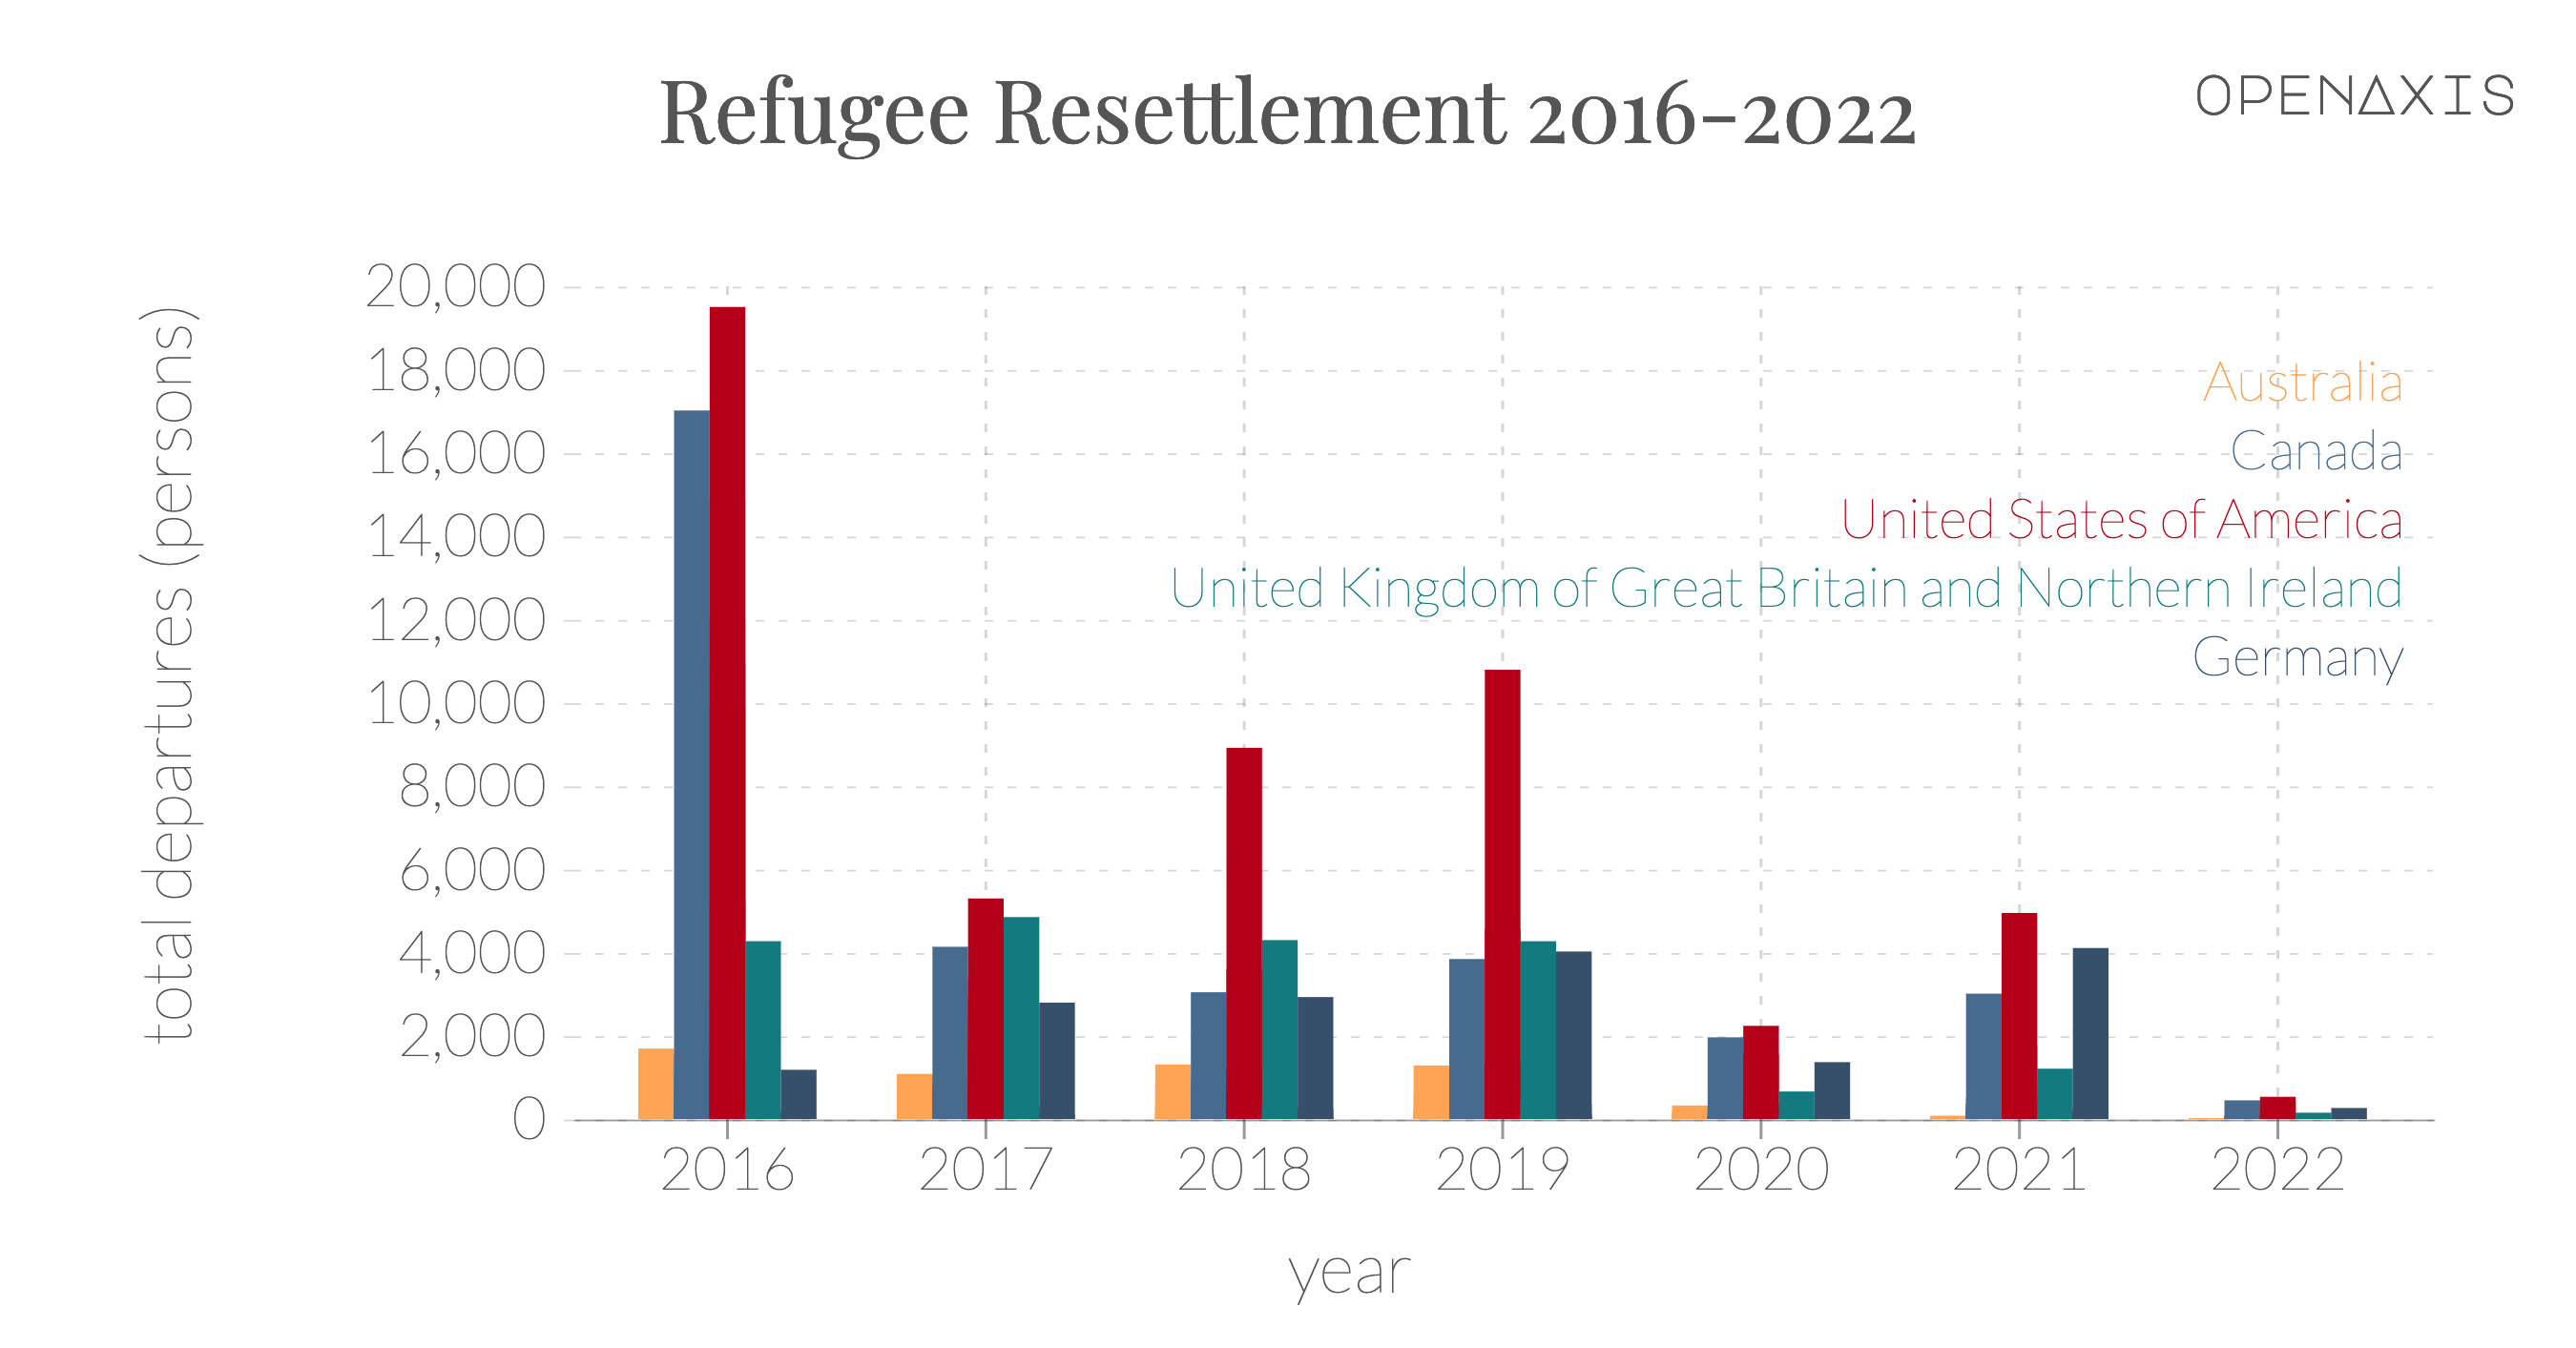 "Refugee Resettlement 2016-2022"